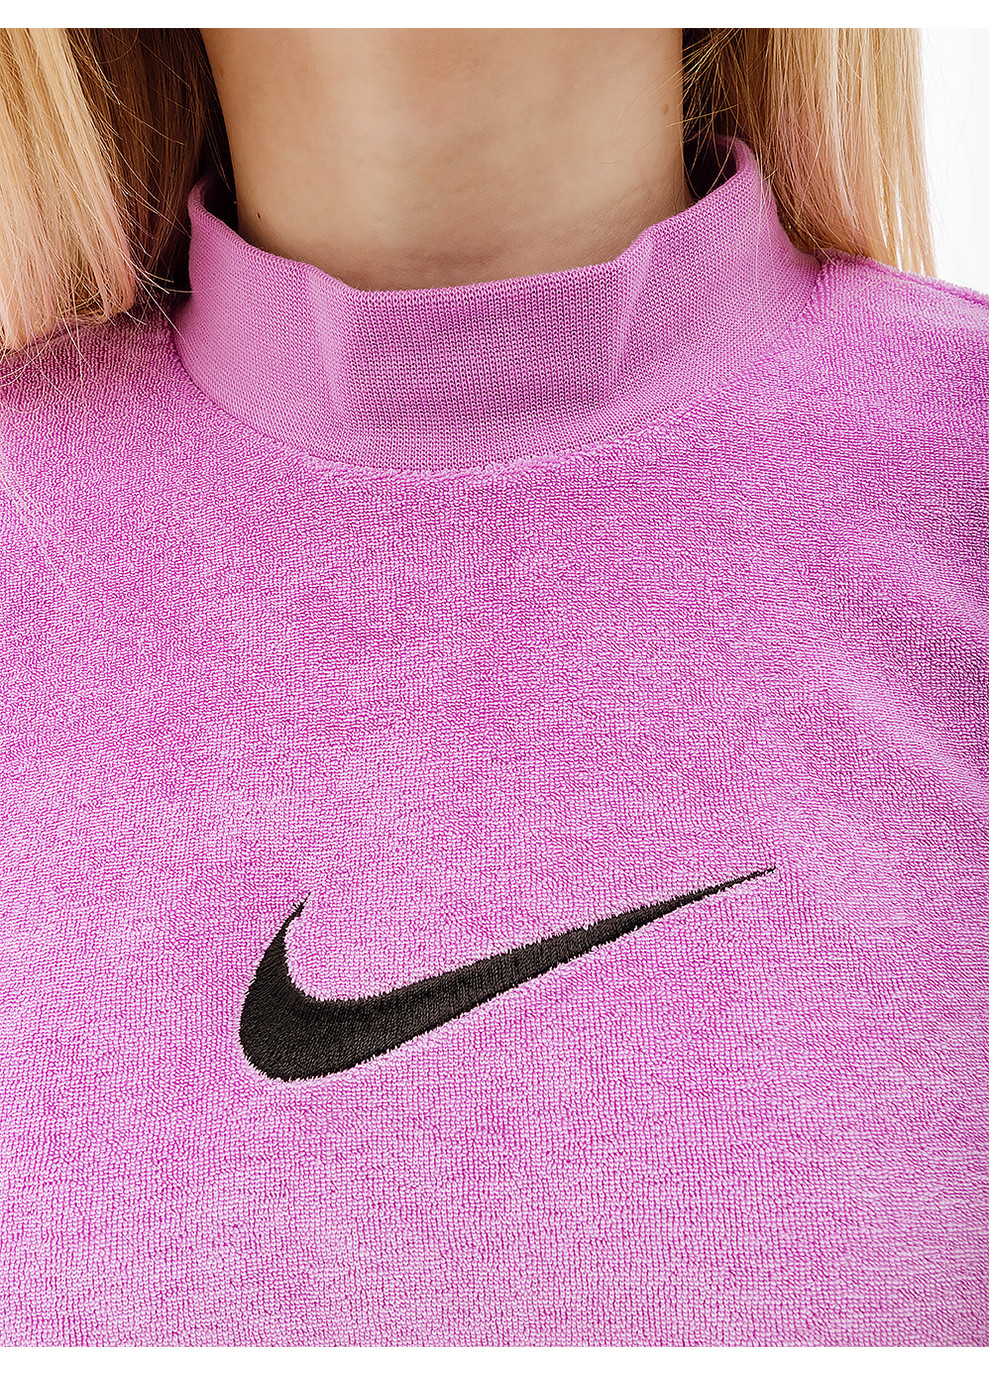 Фиолетовая демисезон женская футболка w nsw mock ss tee trry ms фиолетовый Nike